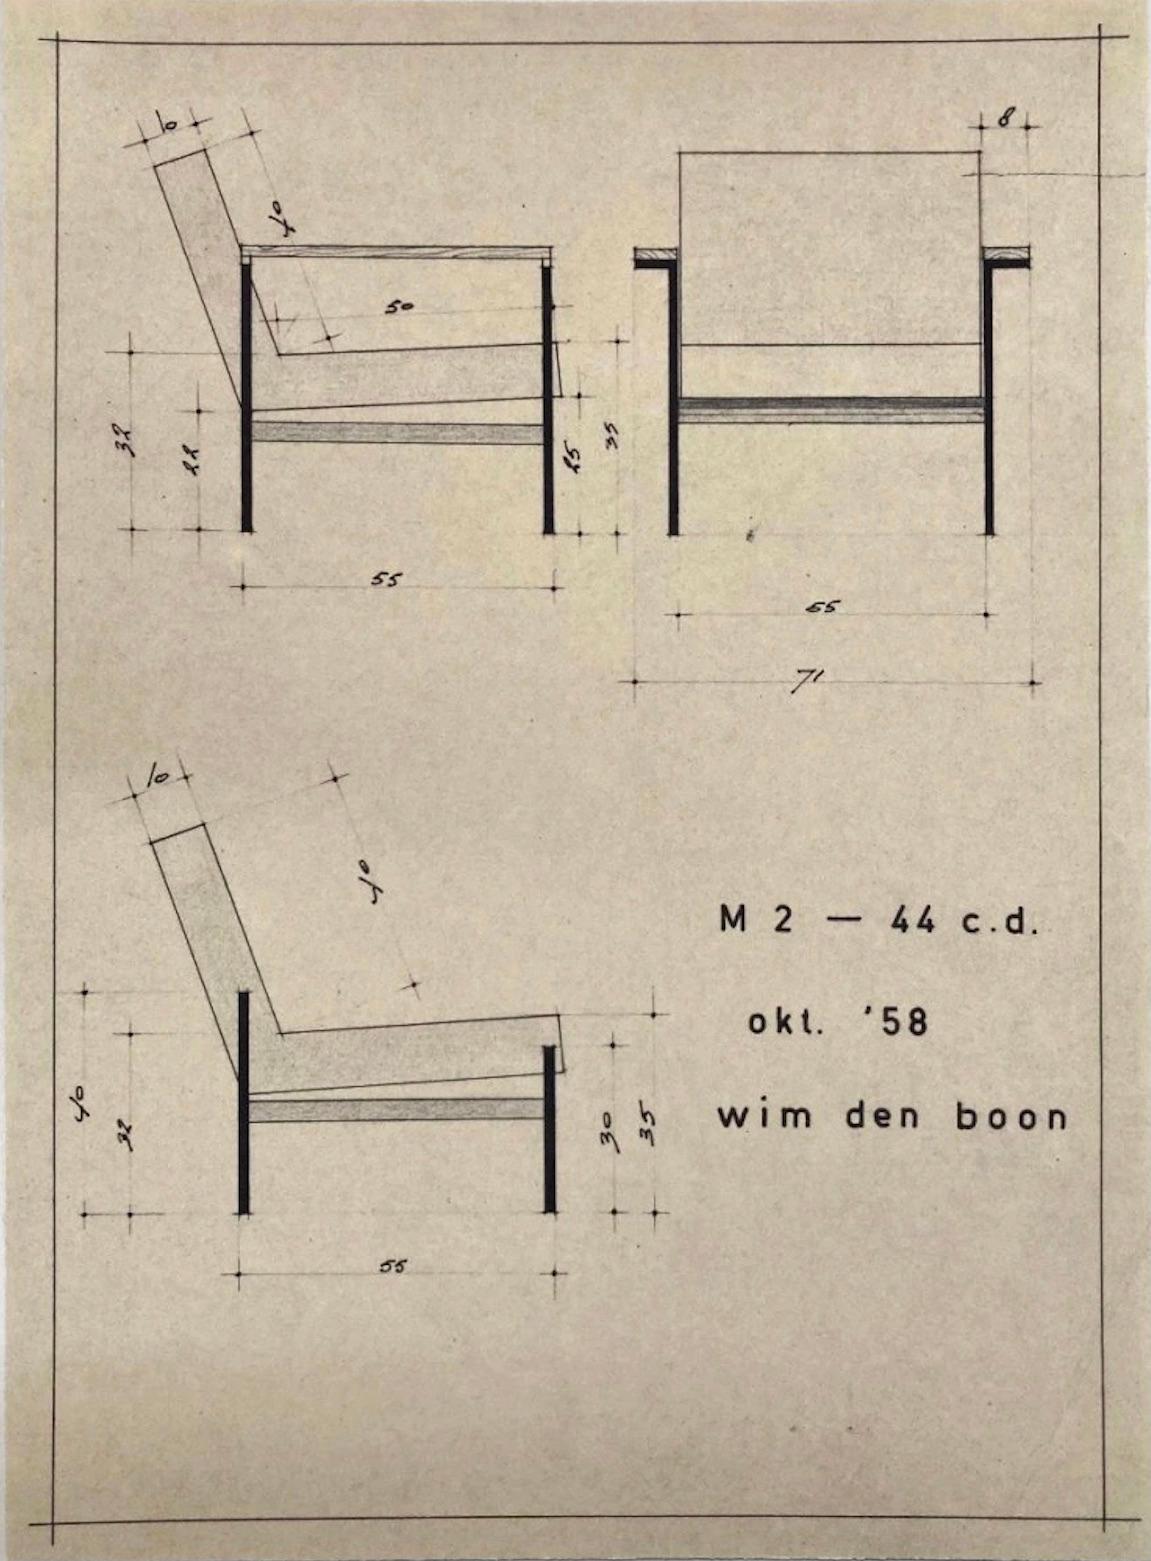 M2-44 Modernist Armchair by Wim Den Boon Netherlands 1958, Set of 2 1